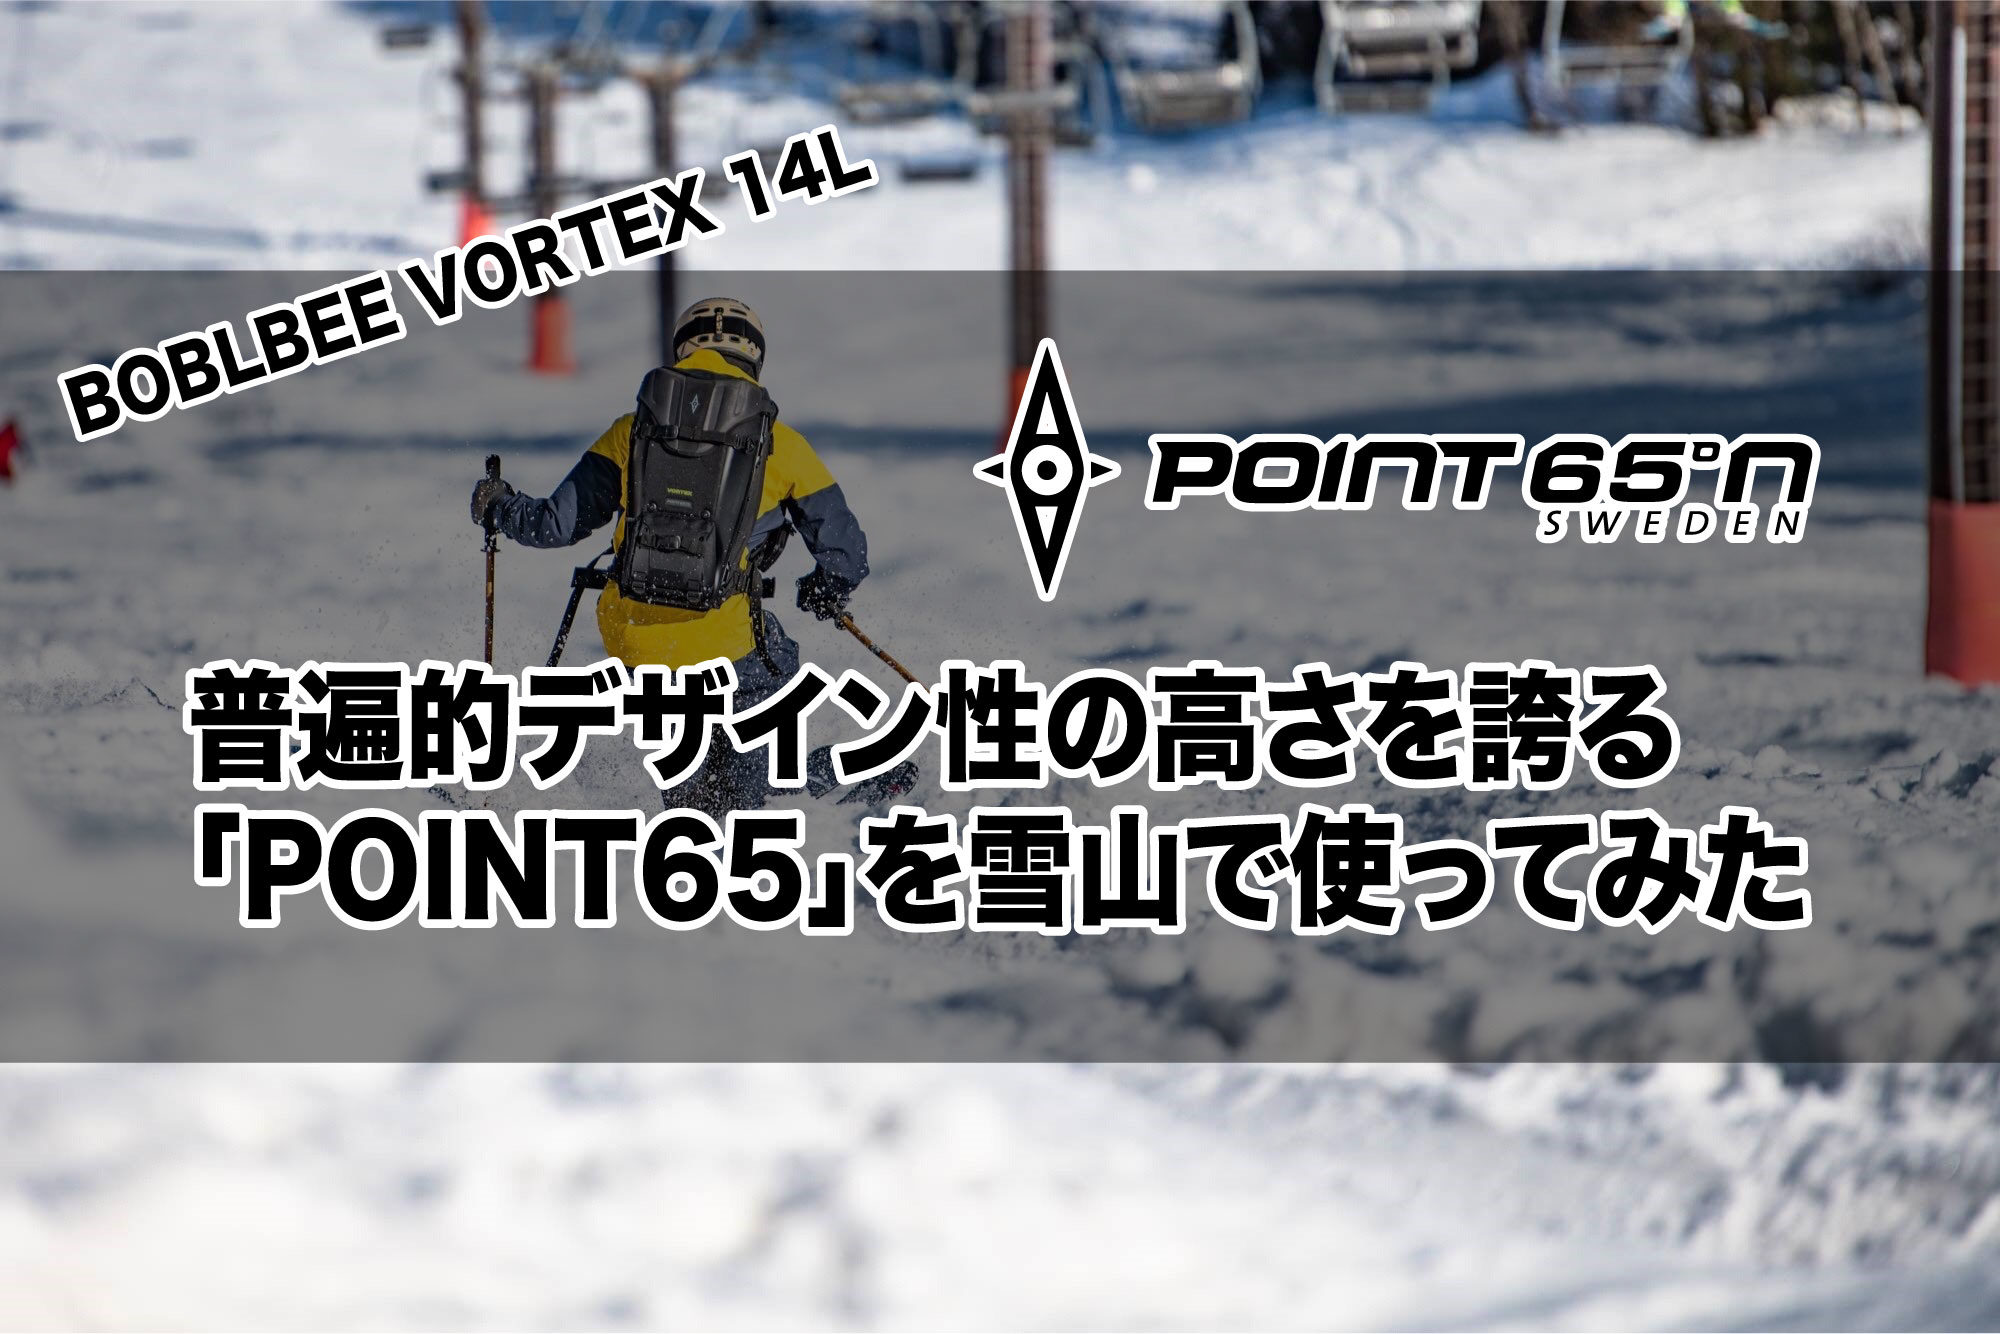 普遍的デザイン性の高さを誇る「POINT65」を雪山で使ってみた